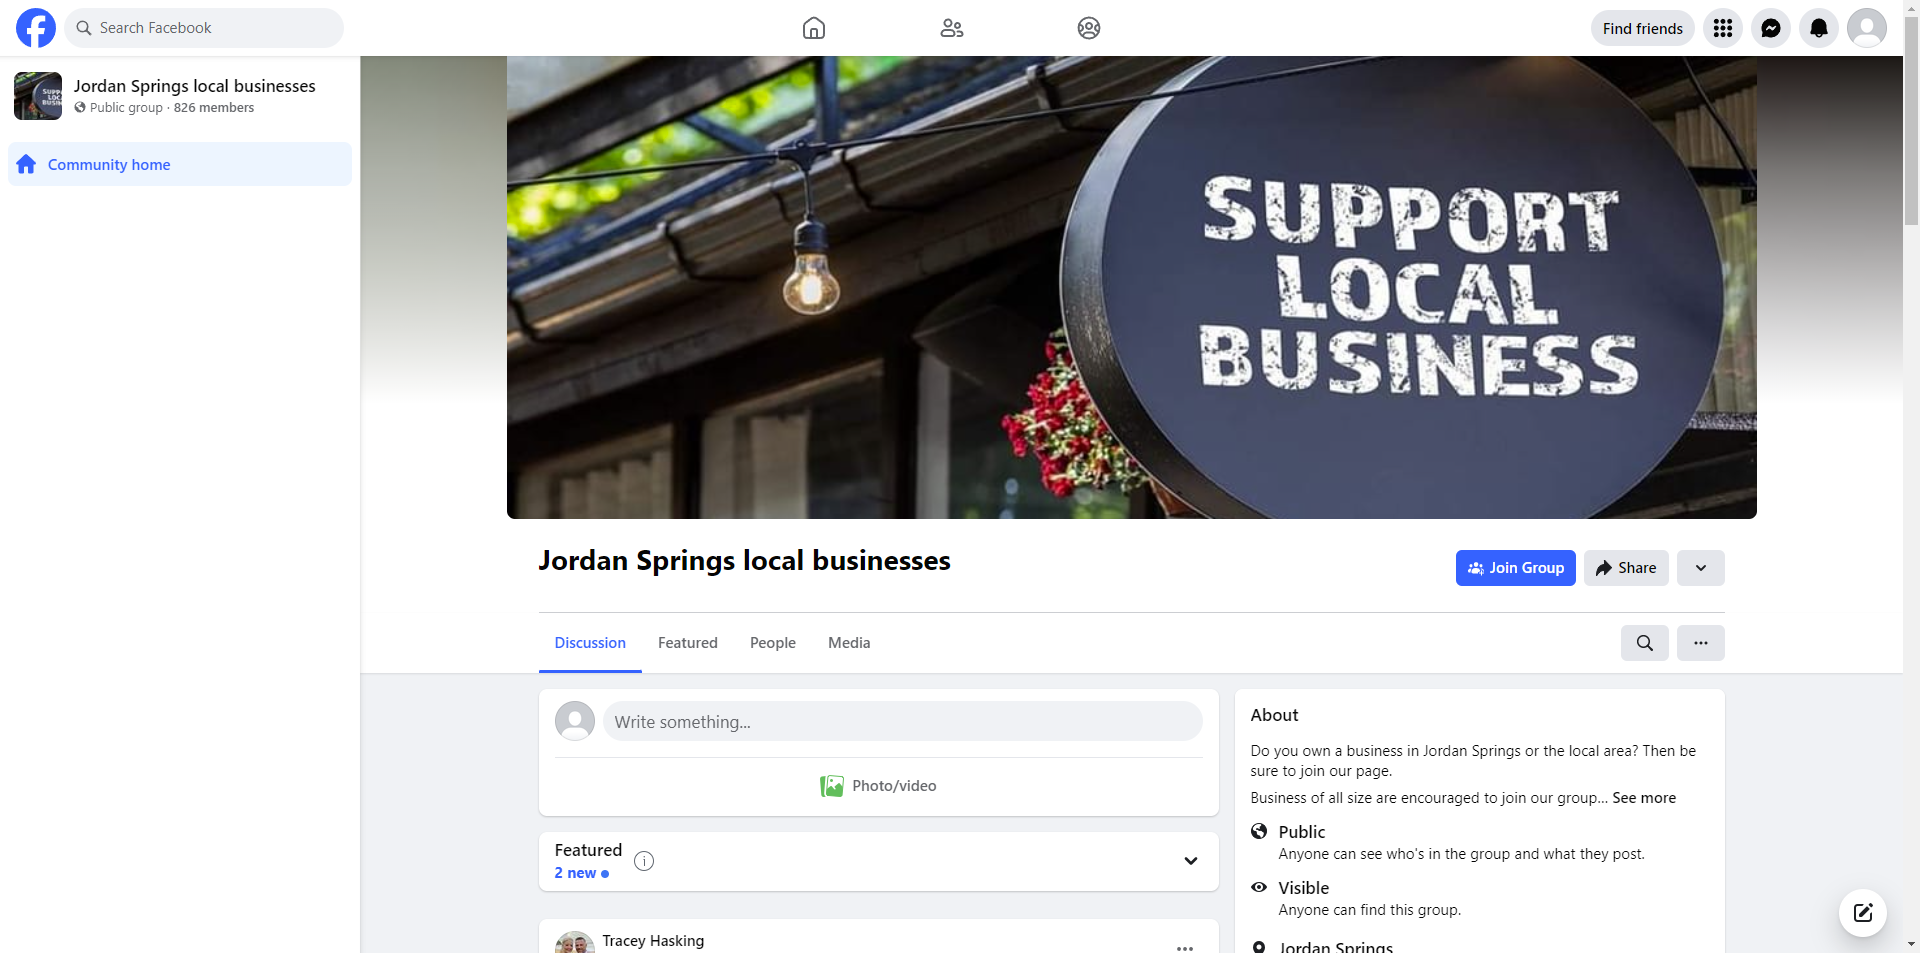 Jordan Springs Local Businesses